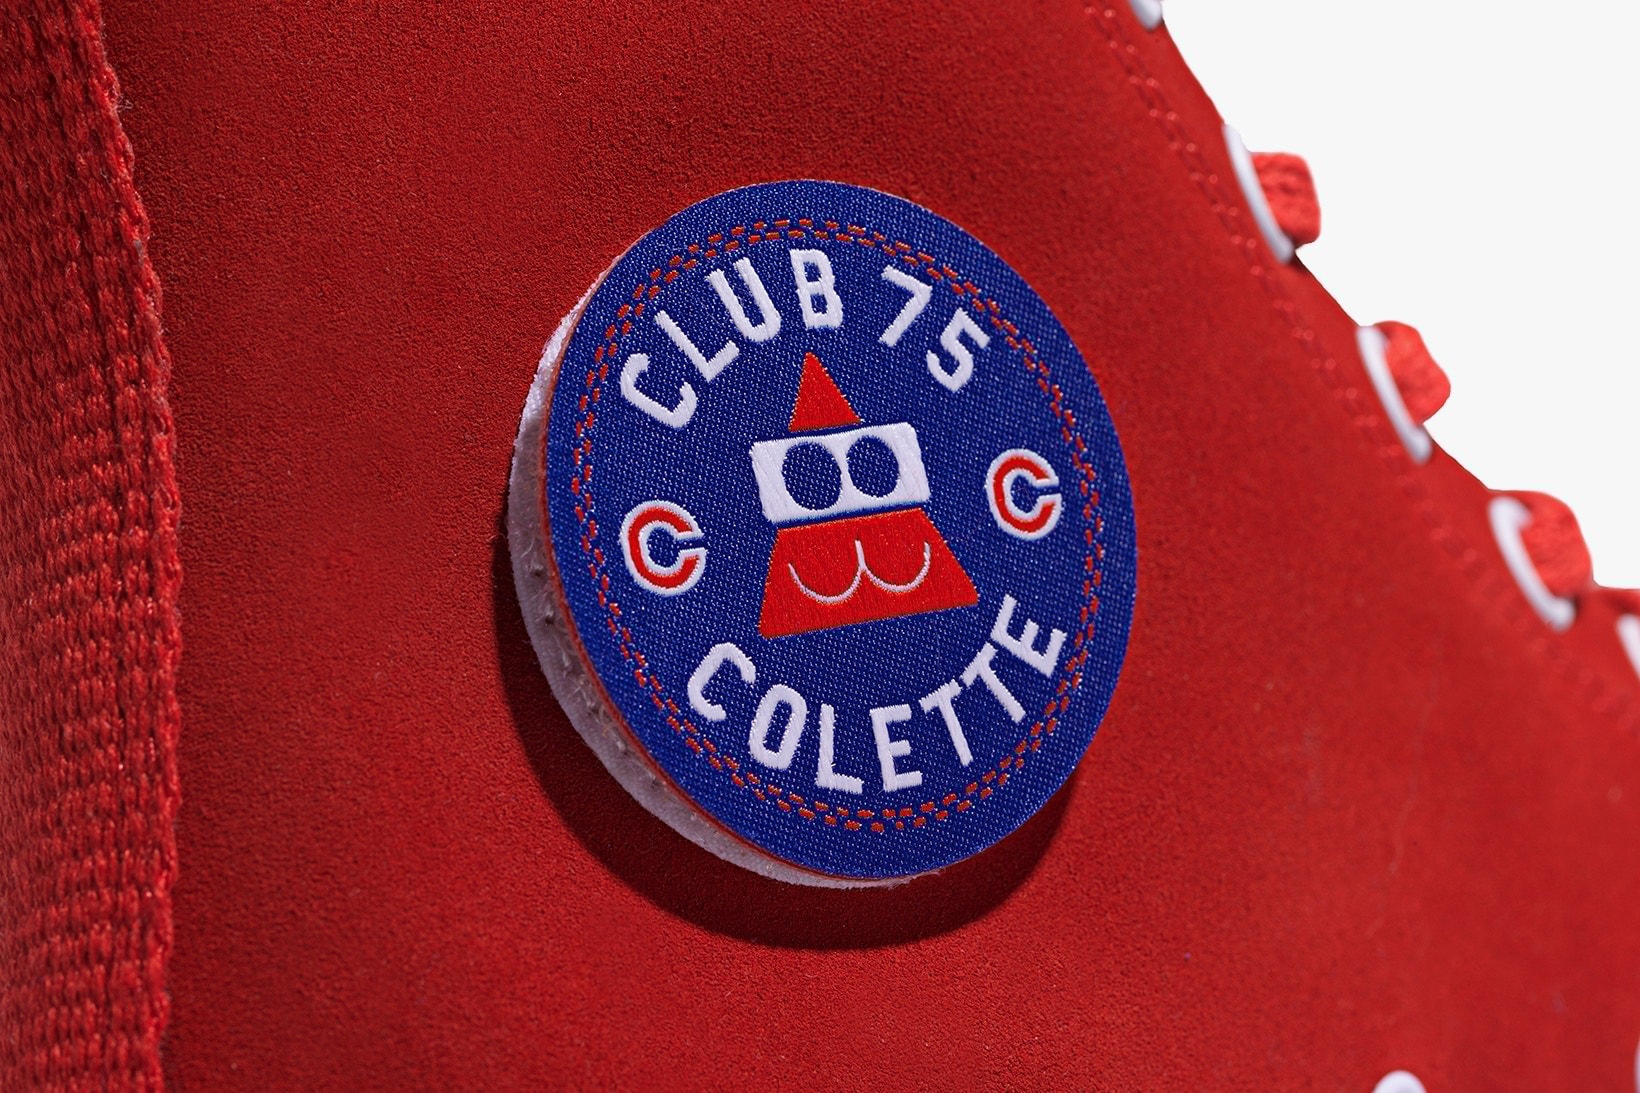 Converse colette Club 75 “Triple C” Collaboration